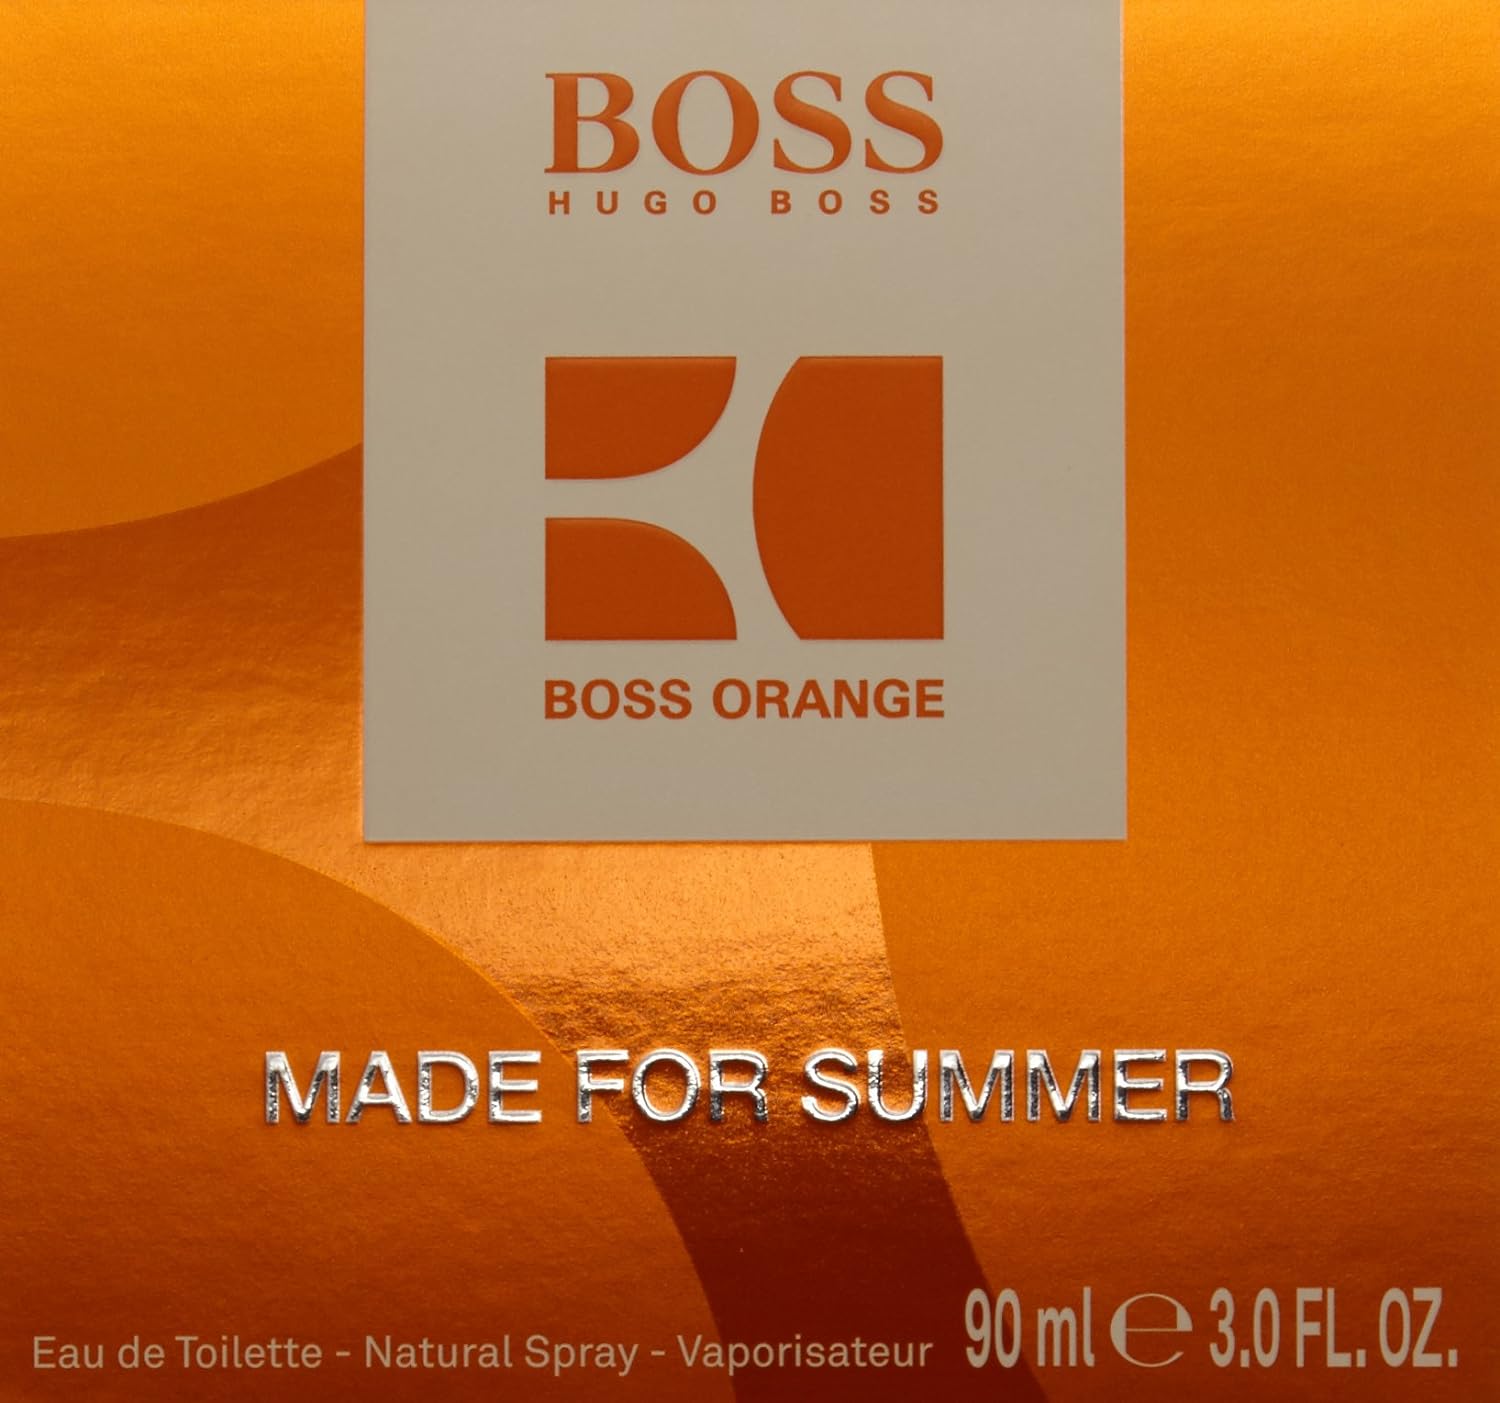 Hugo Boss Motion Orange Made for Summer Eau de Toilette